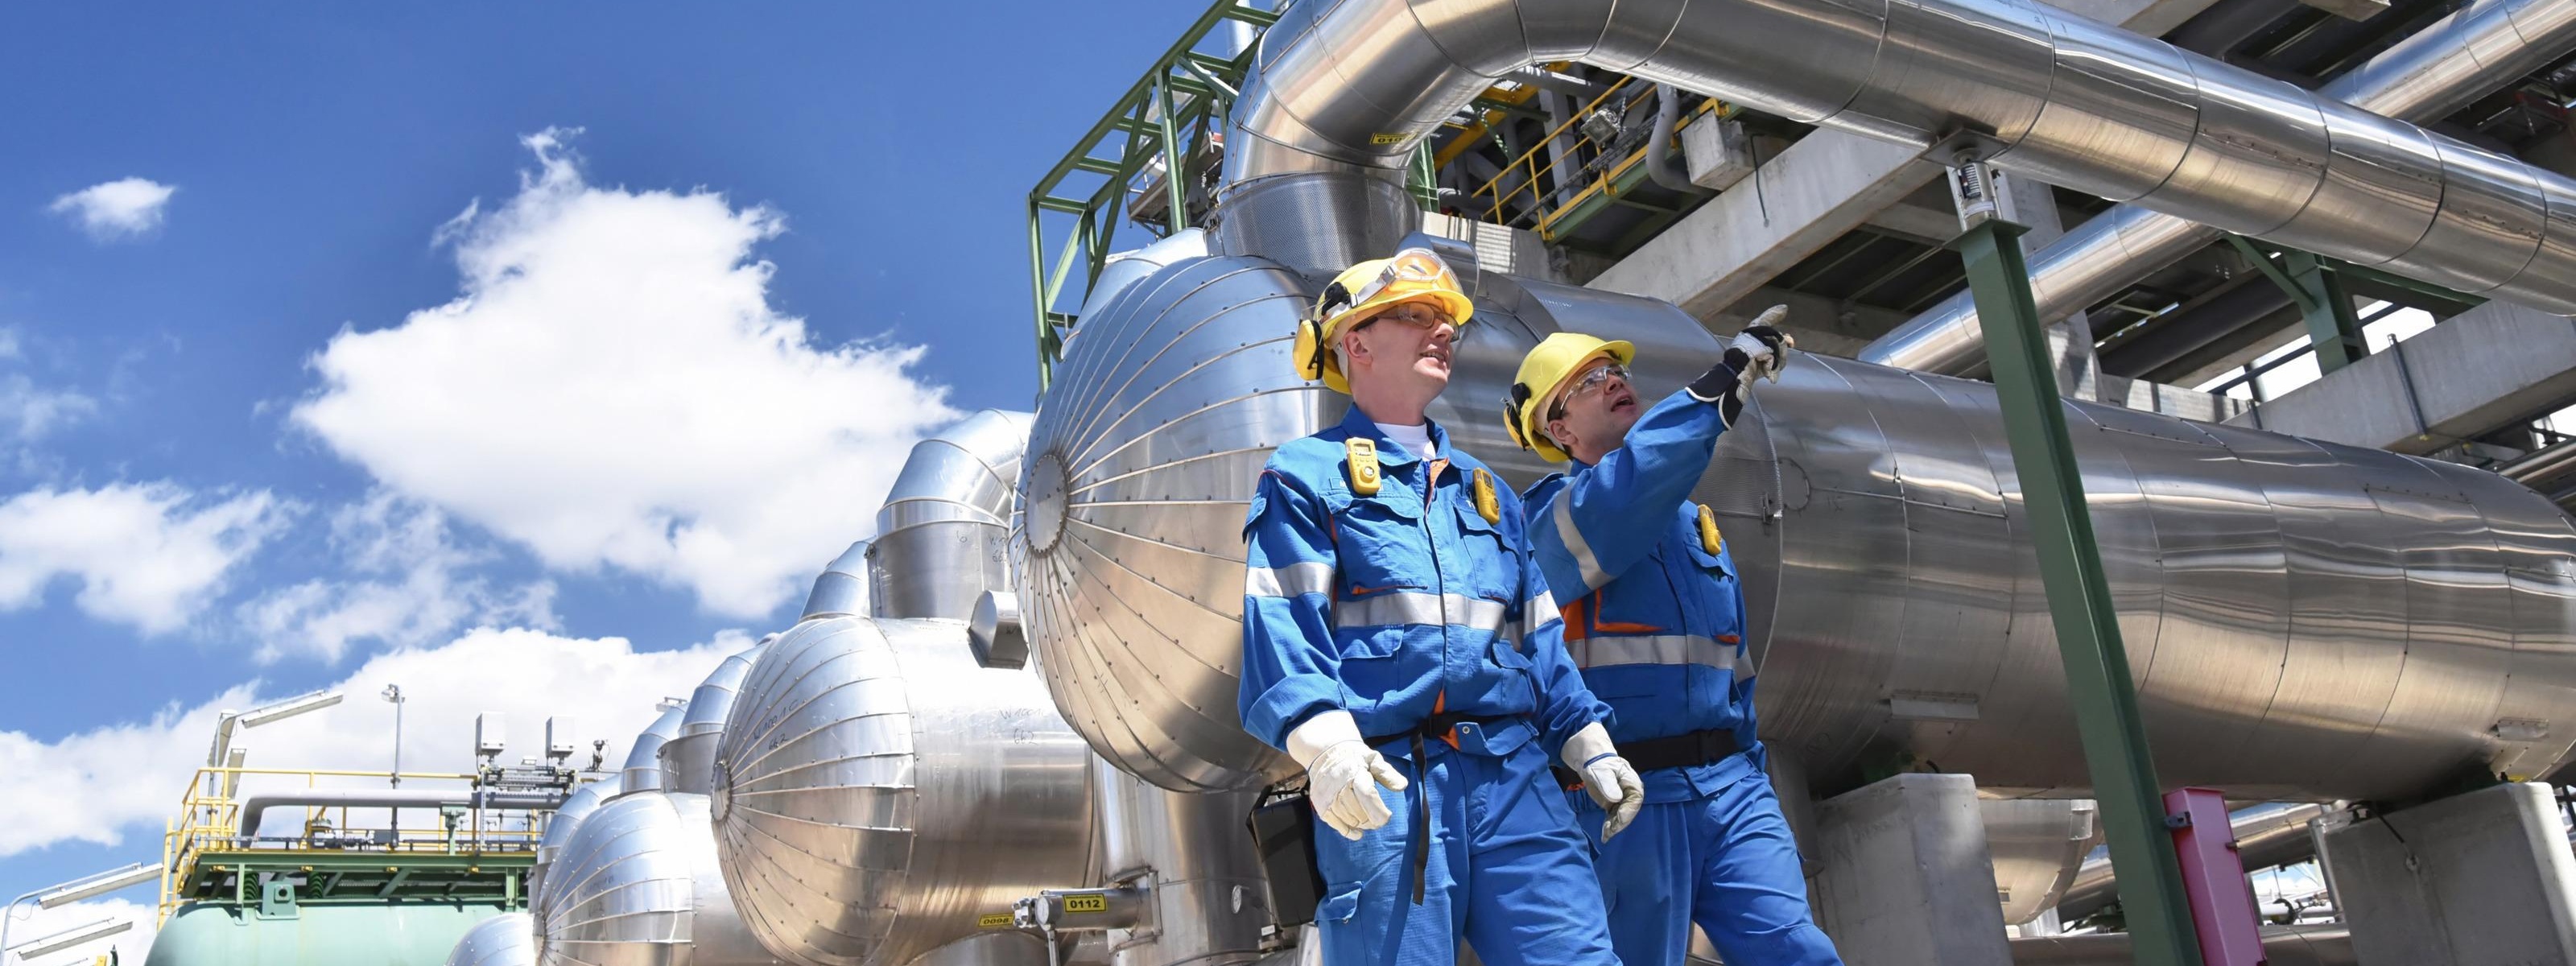 Zwei Personen in Schutzausrüstung mit gelben Helmen gehen entlang Raffinerietanks, im Hintergrund blauer Himmel mit Wolken